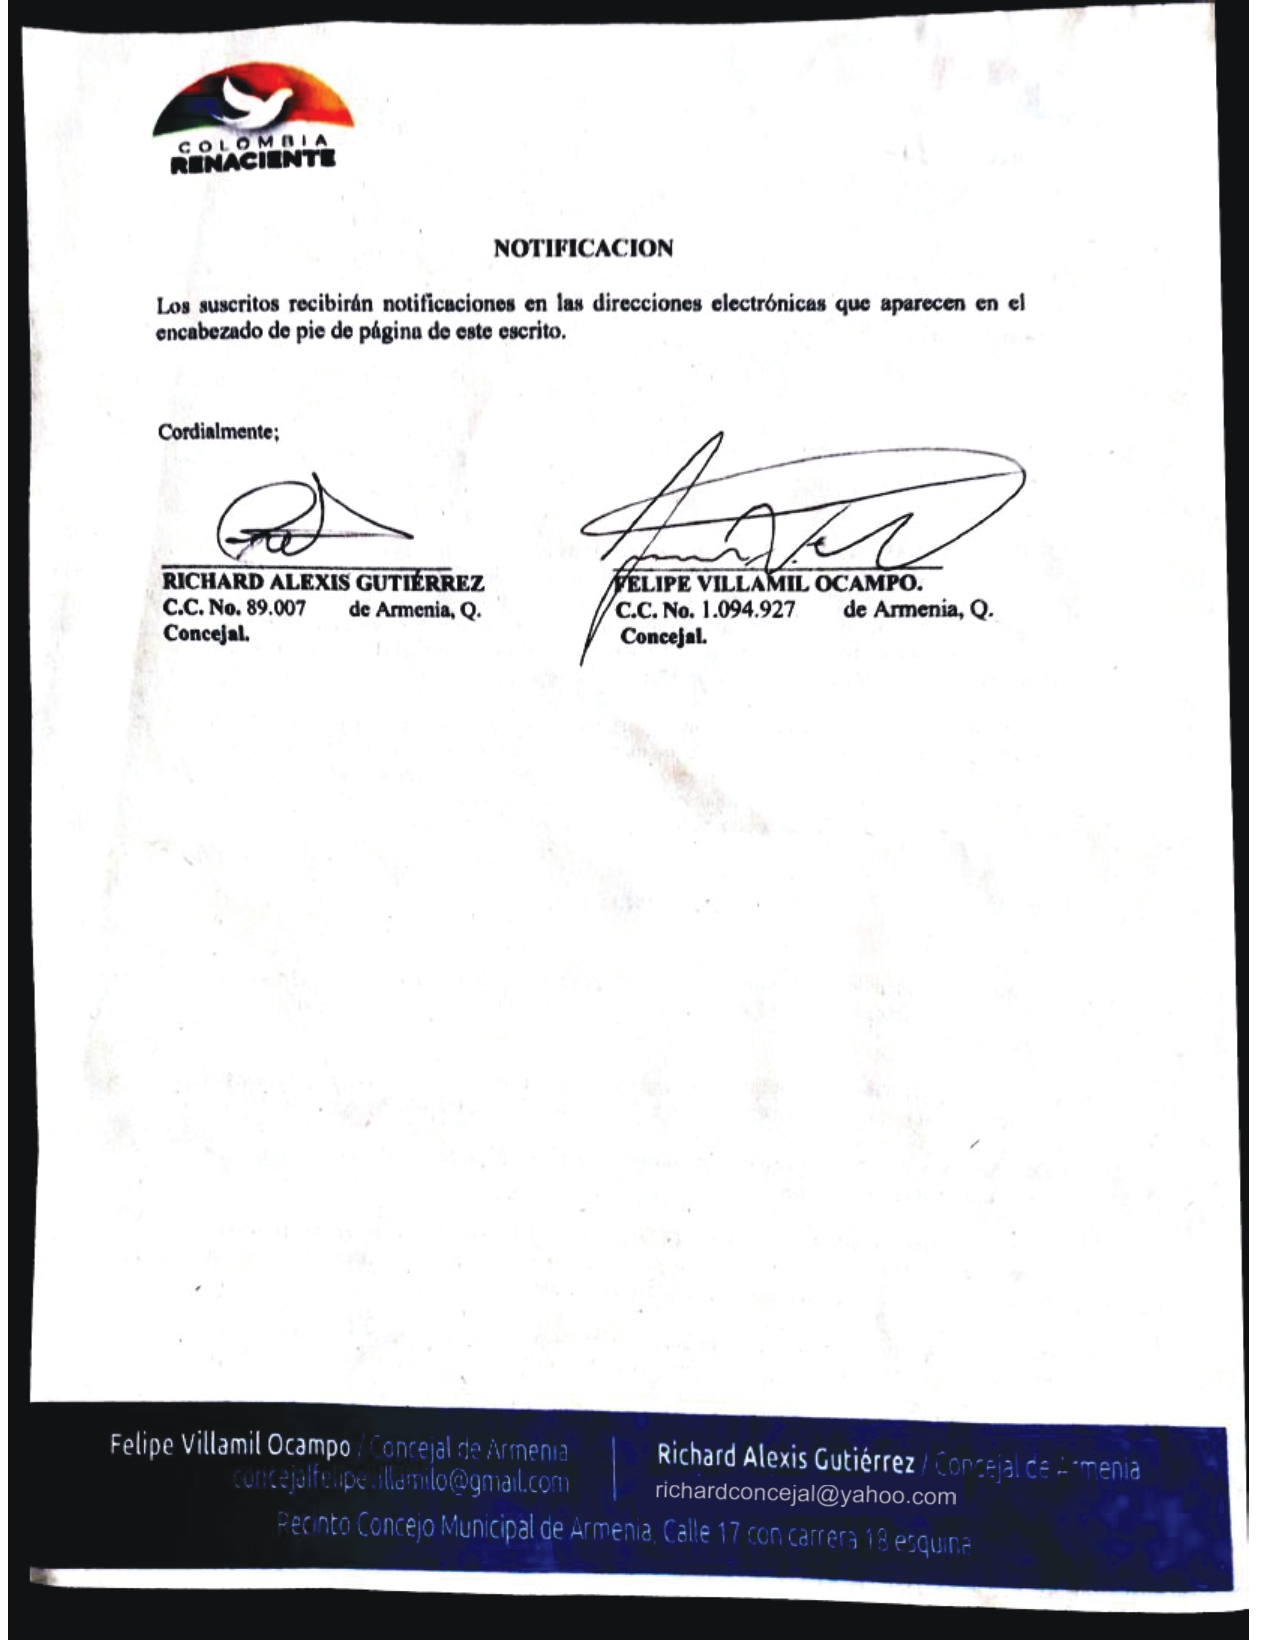 derecho de peticion concejales col Renaciente 1 pages to jpg 0002